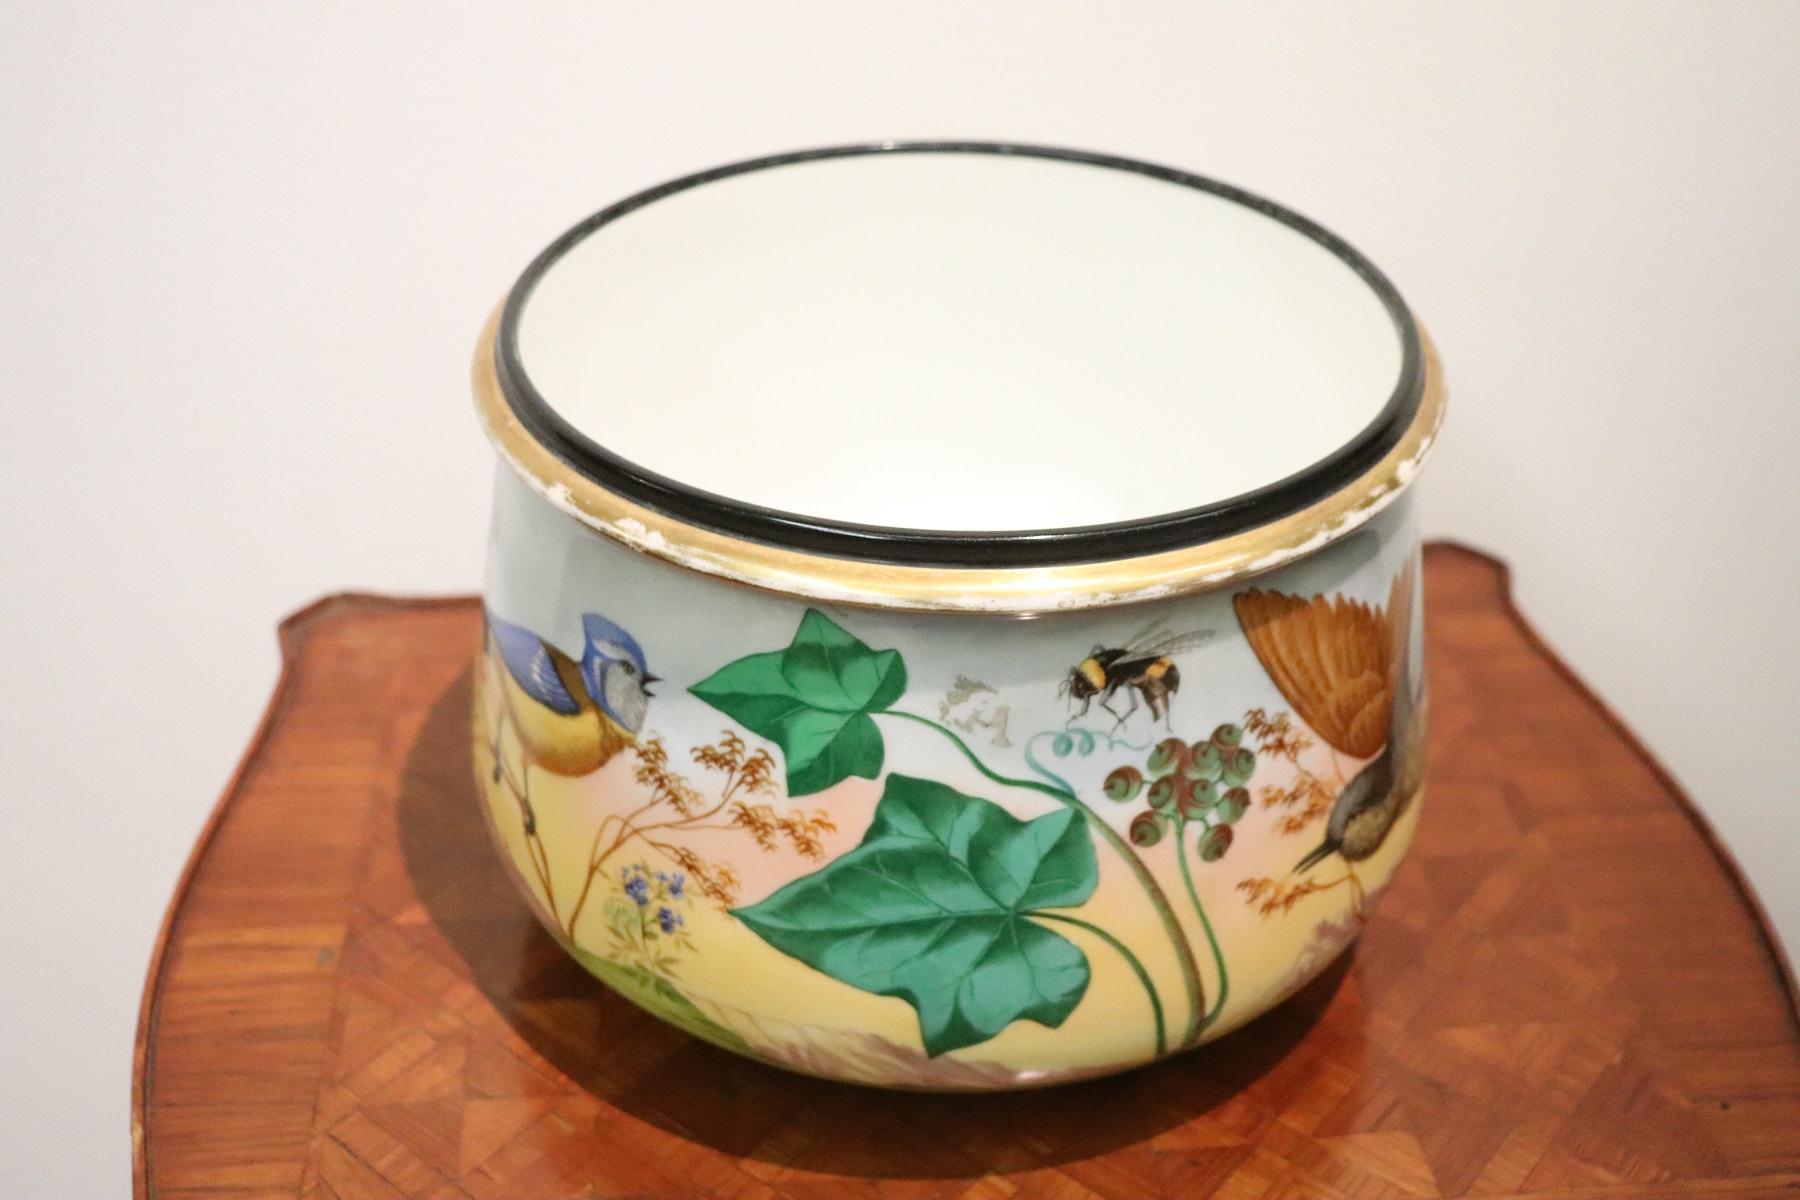 20th Century Art Nouveau Hand Painted Ceramic Vase, 1920s (Keramik)